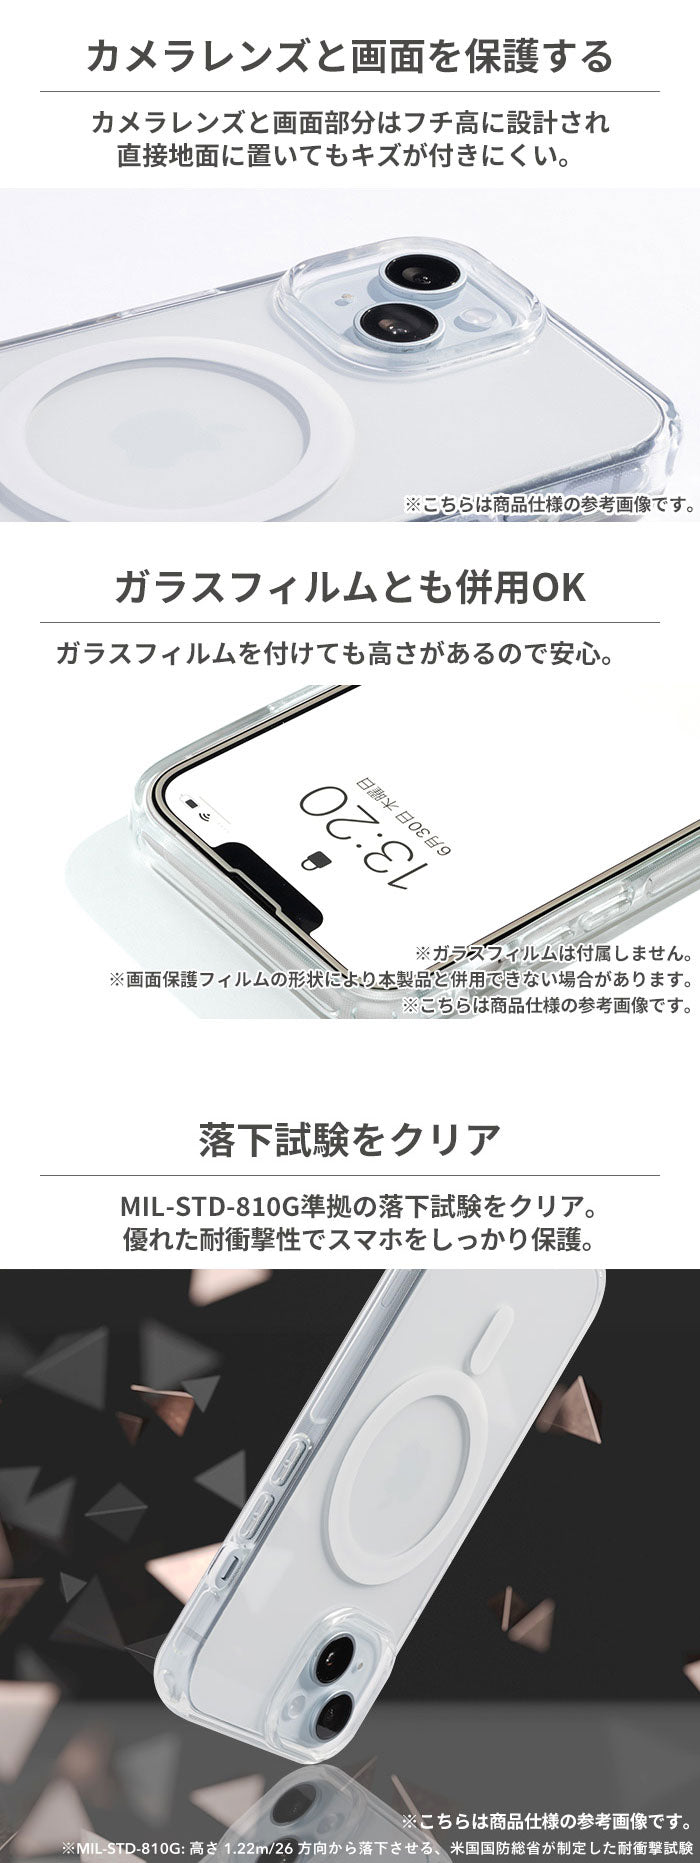 [iPhone 15/14/13専用] ディズニーキャラクター HIGHER MagSafe対応 ハイブリッドケース